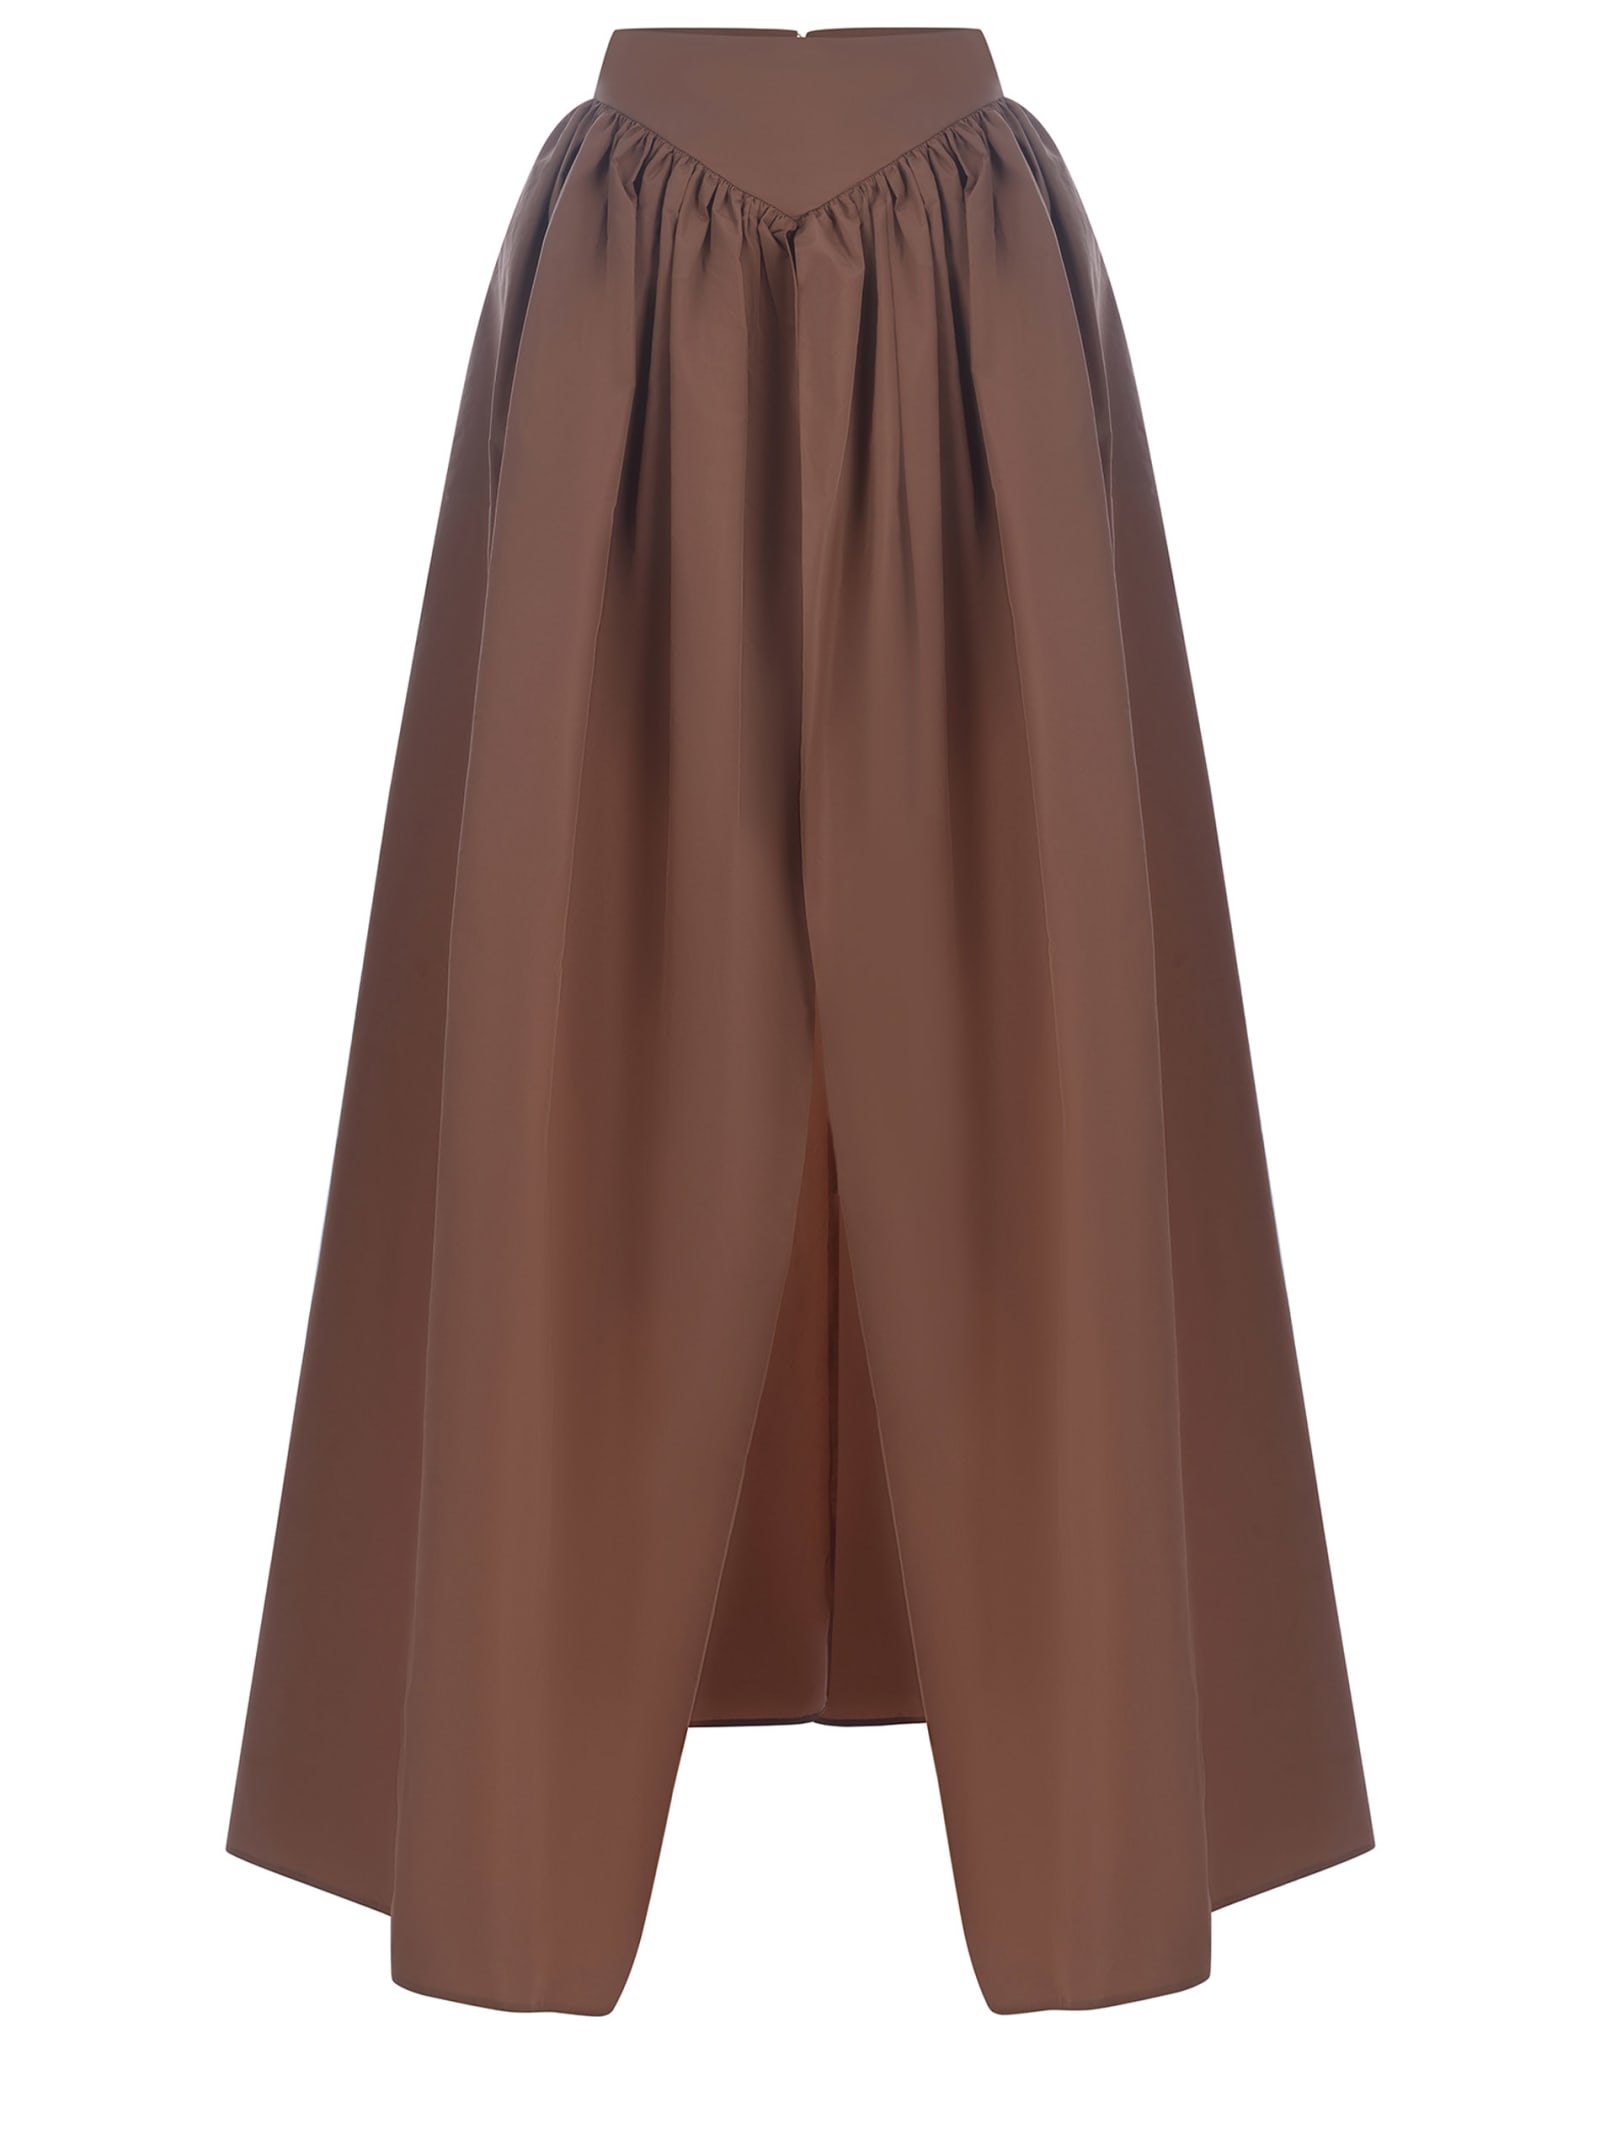 Long Skirt Made Of Taffeta